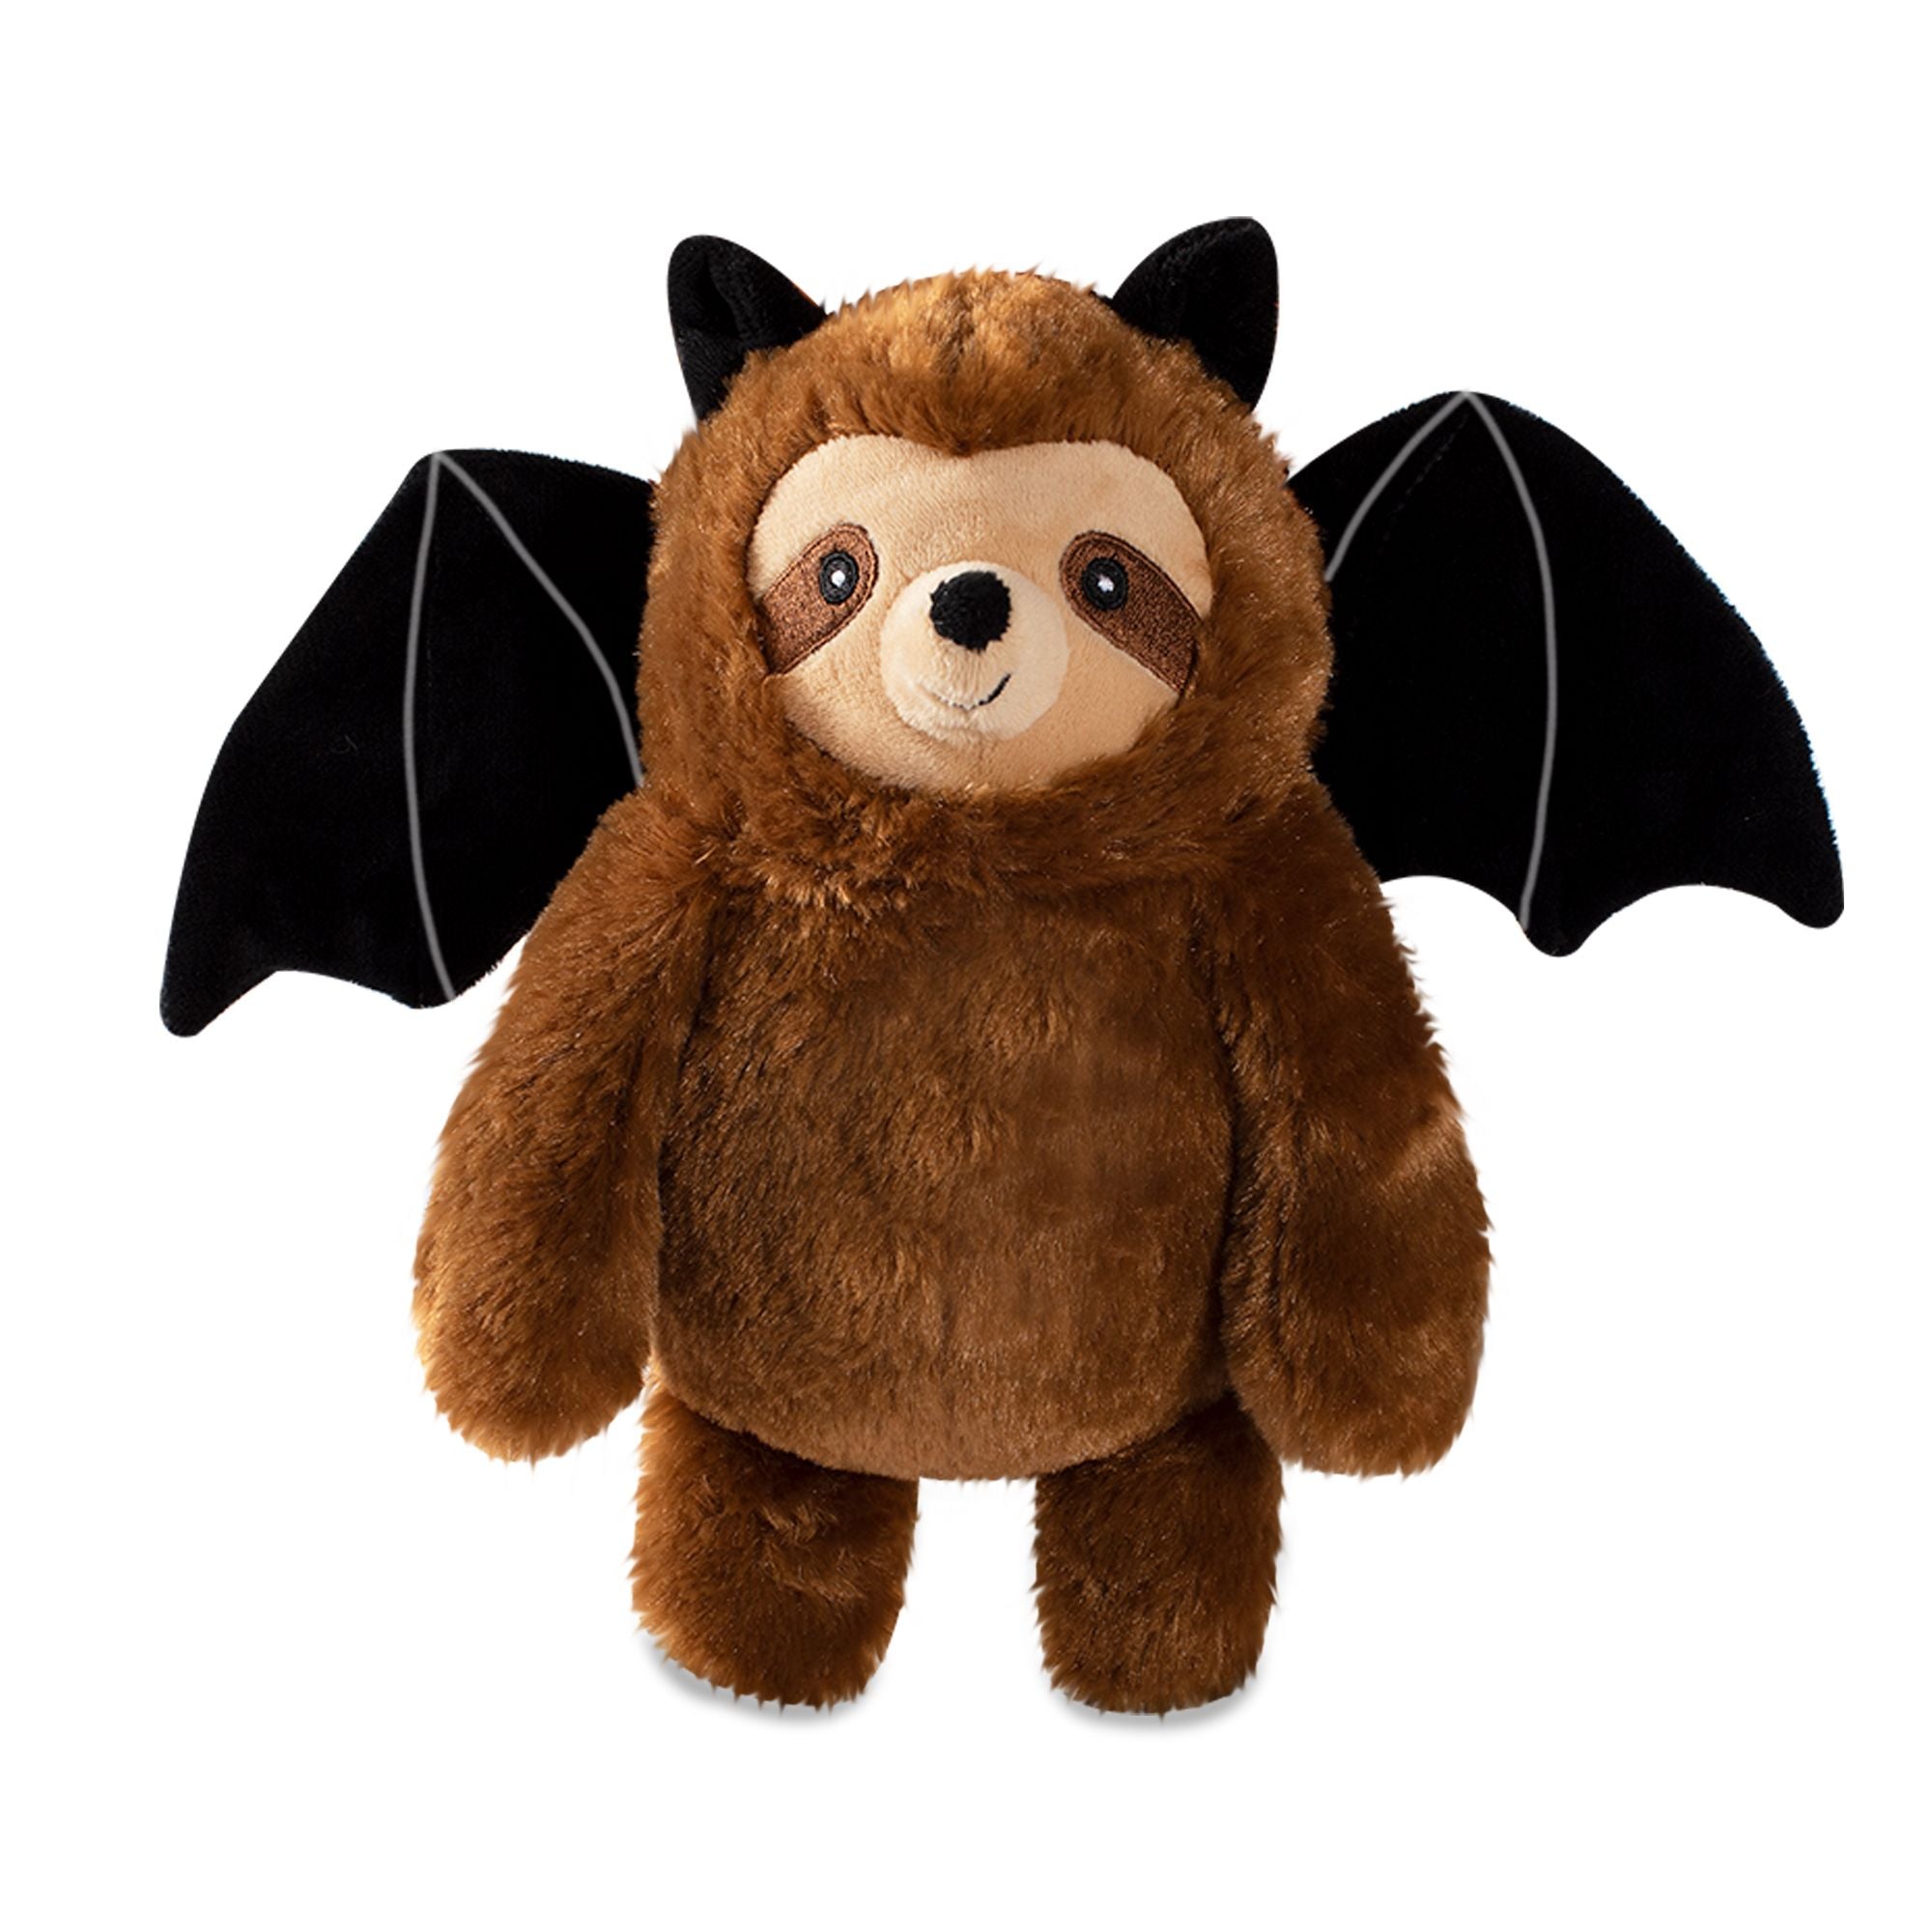 Fringe Studio Dog Squeaker Toy - Bat Sloth